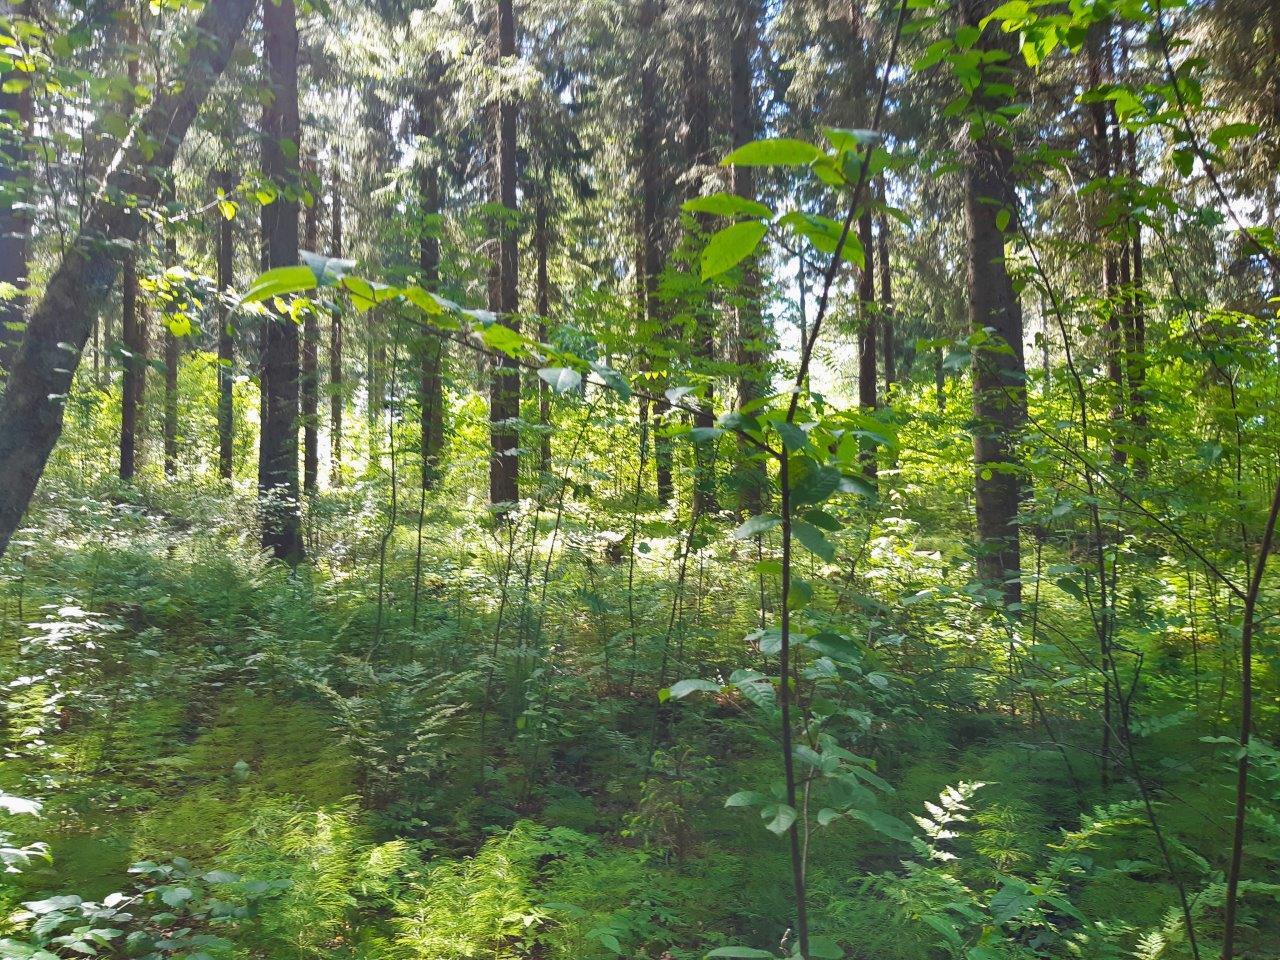 Kuusivaltainen metsä helottaa vihreänä auringossa. Maassa kasvaa saniaisia.